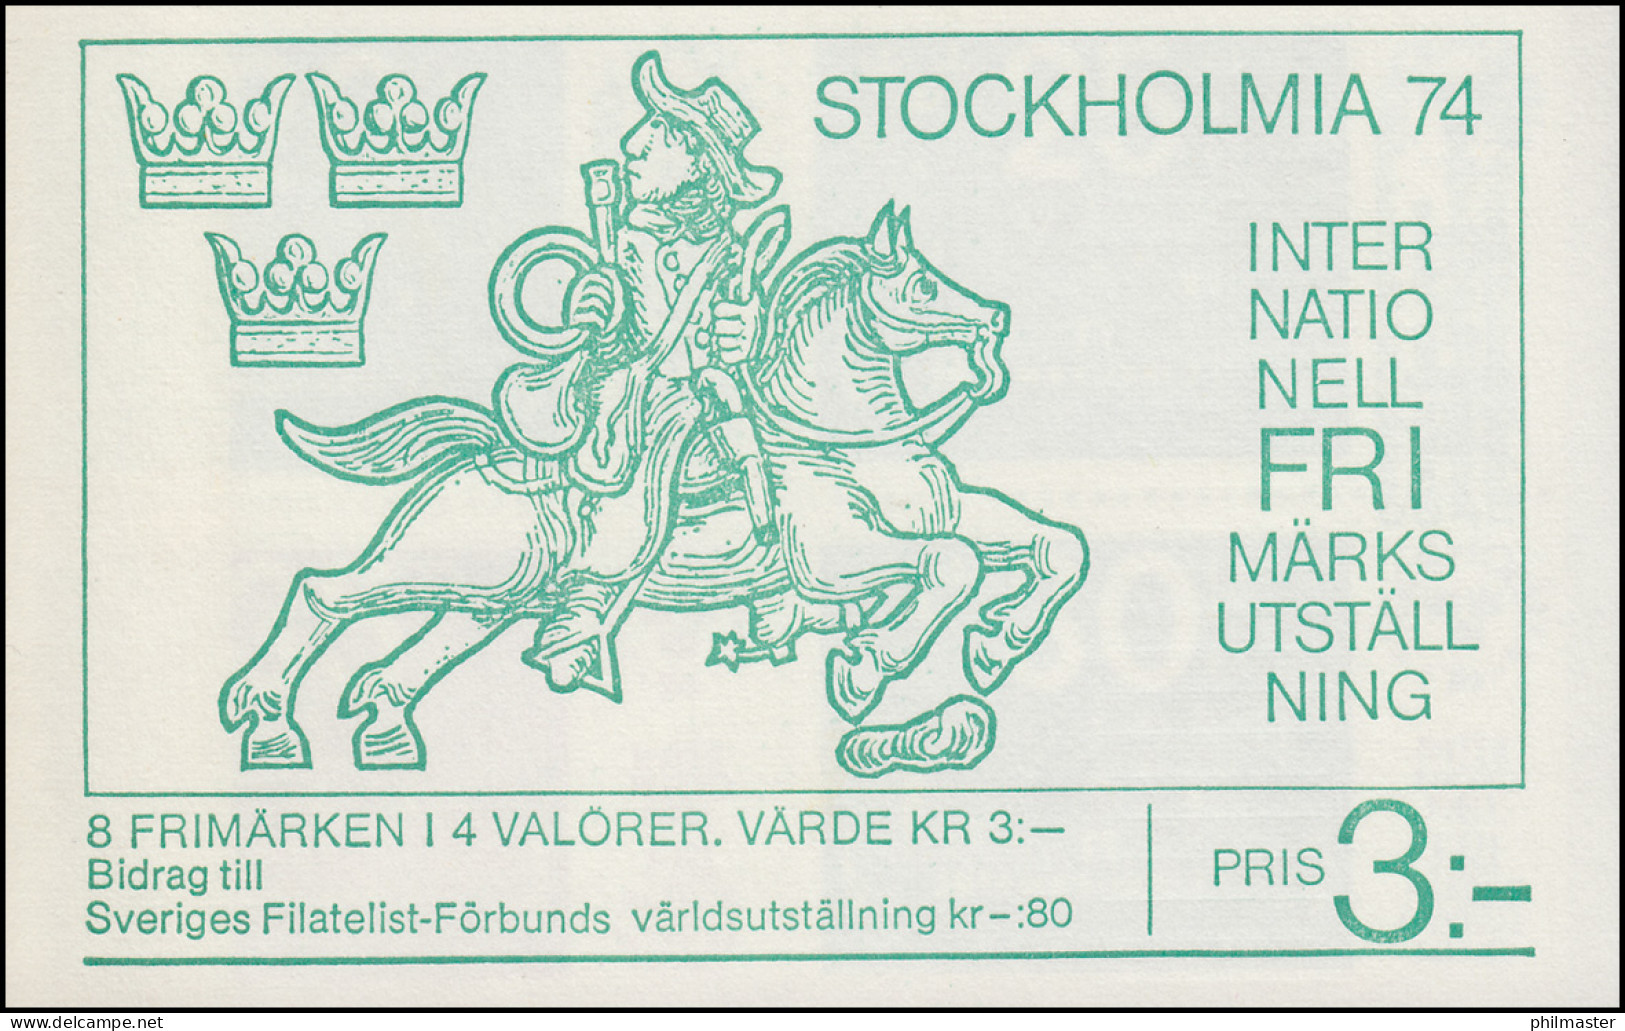 Markenheftchen 45 Briefmarkenausstellung STOCKHOLMIA'74 Ausgabe 1974, ** - Unclassified